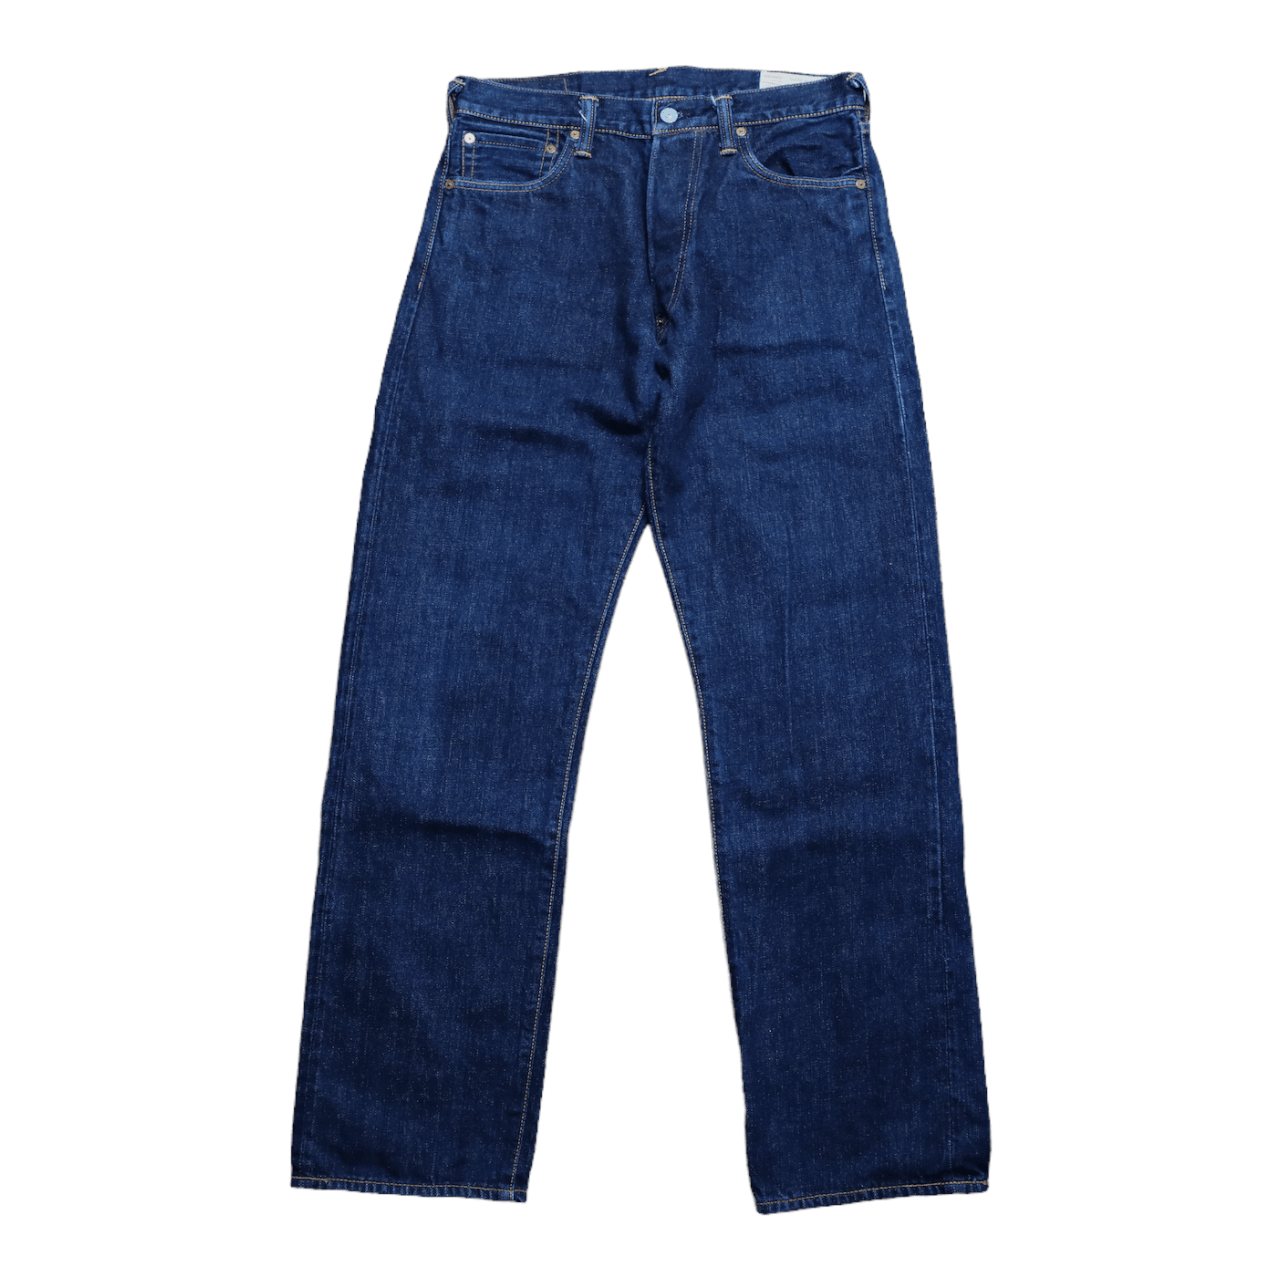 Evisu Blue Dicock Jeans - Known Source